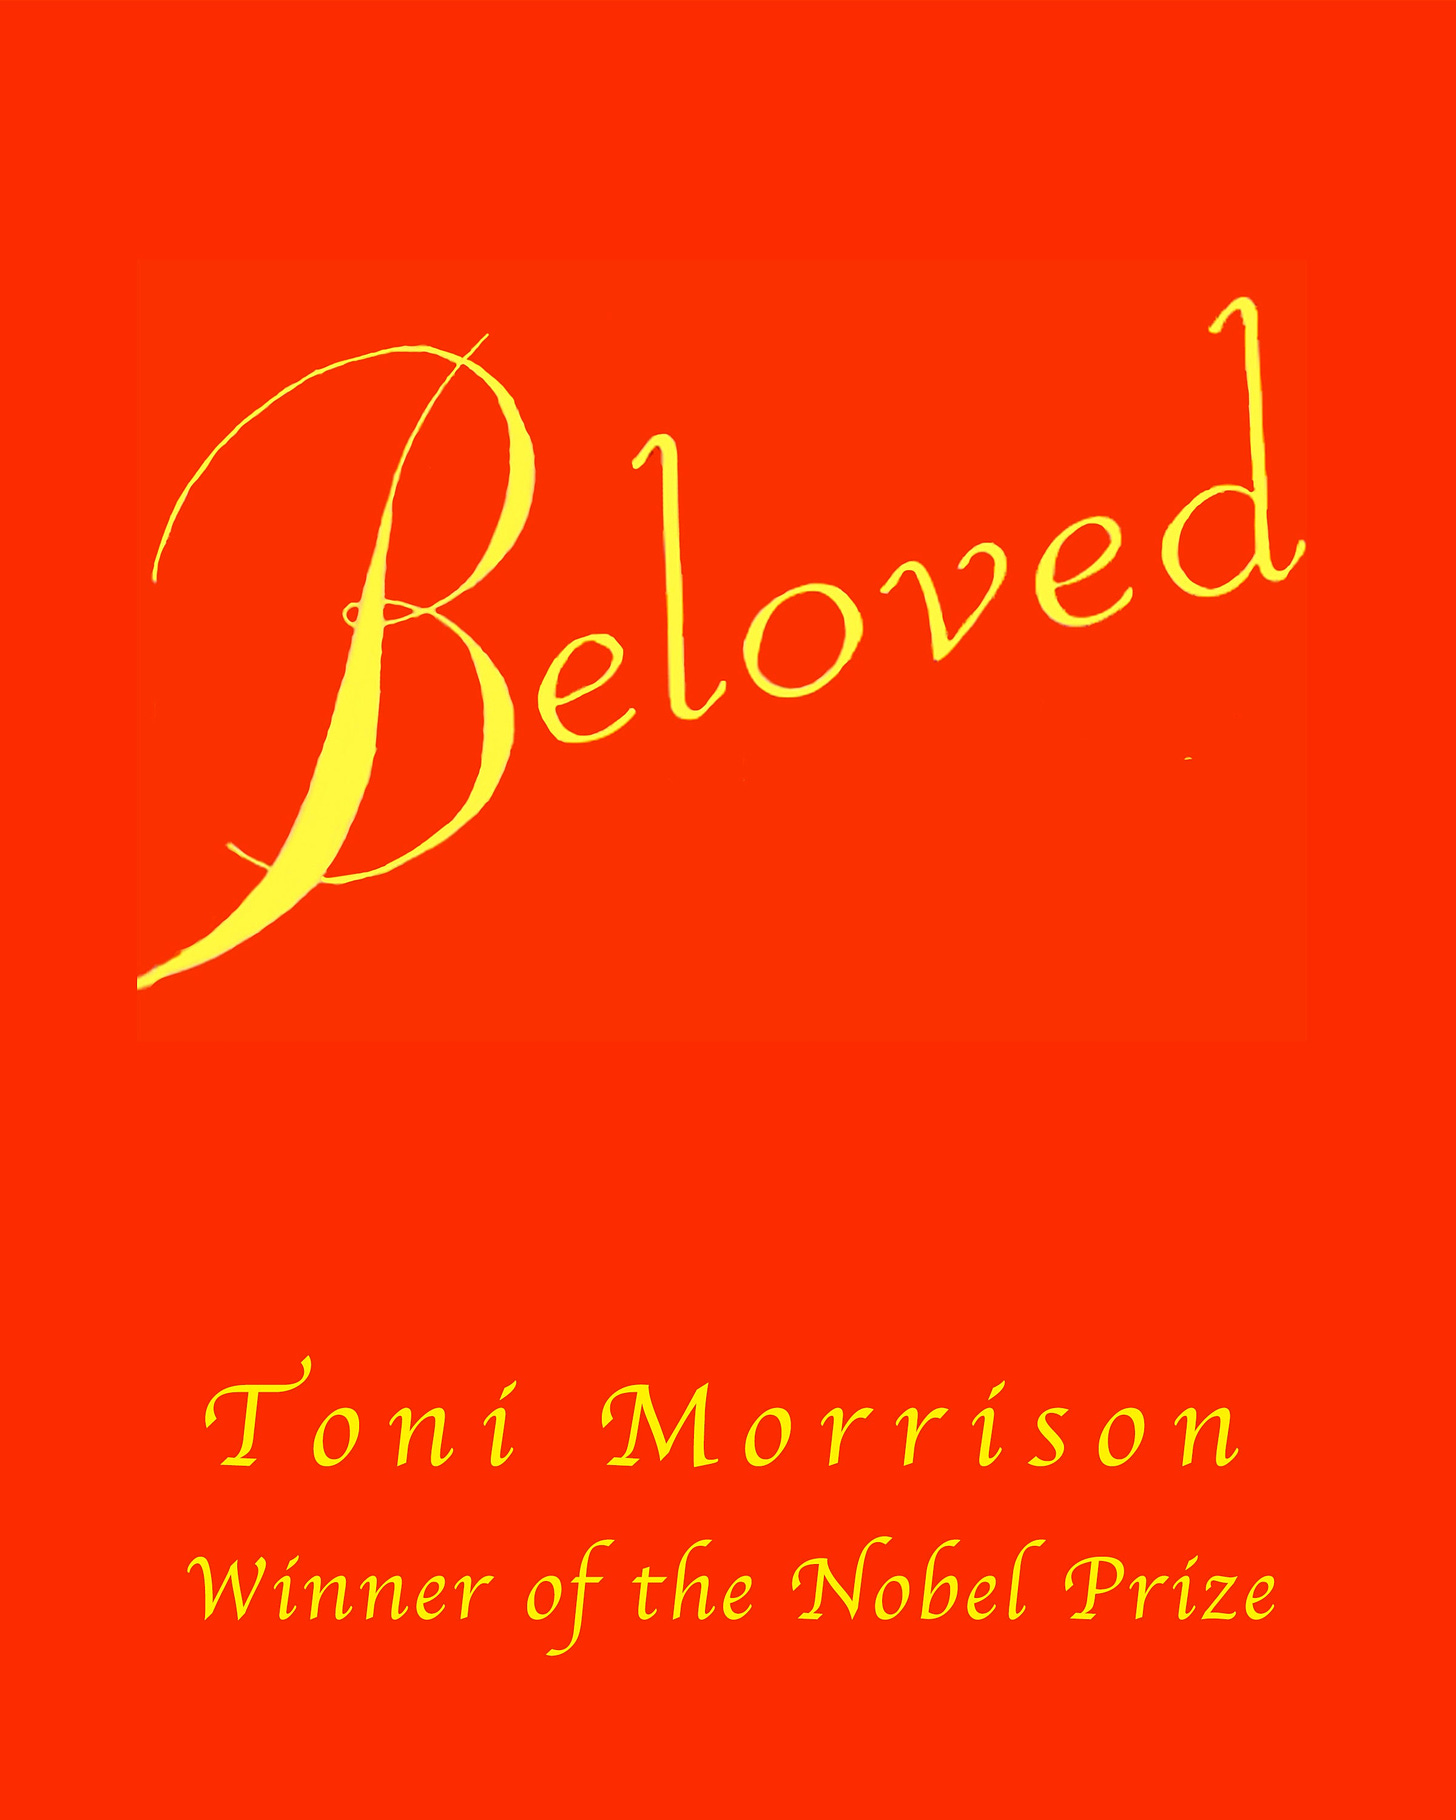 TONI MORRISON BELOVED Book Cover Framed and Unframed 3 Sizes - Etsy